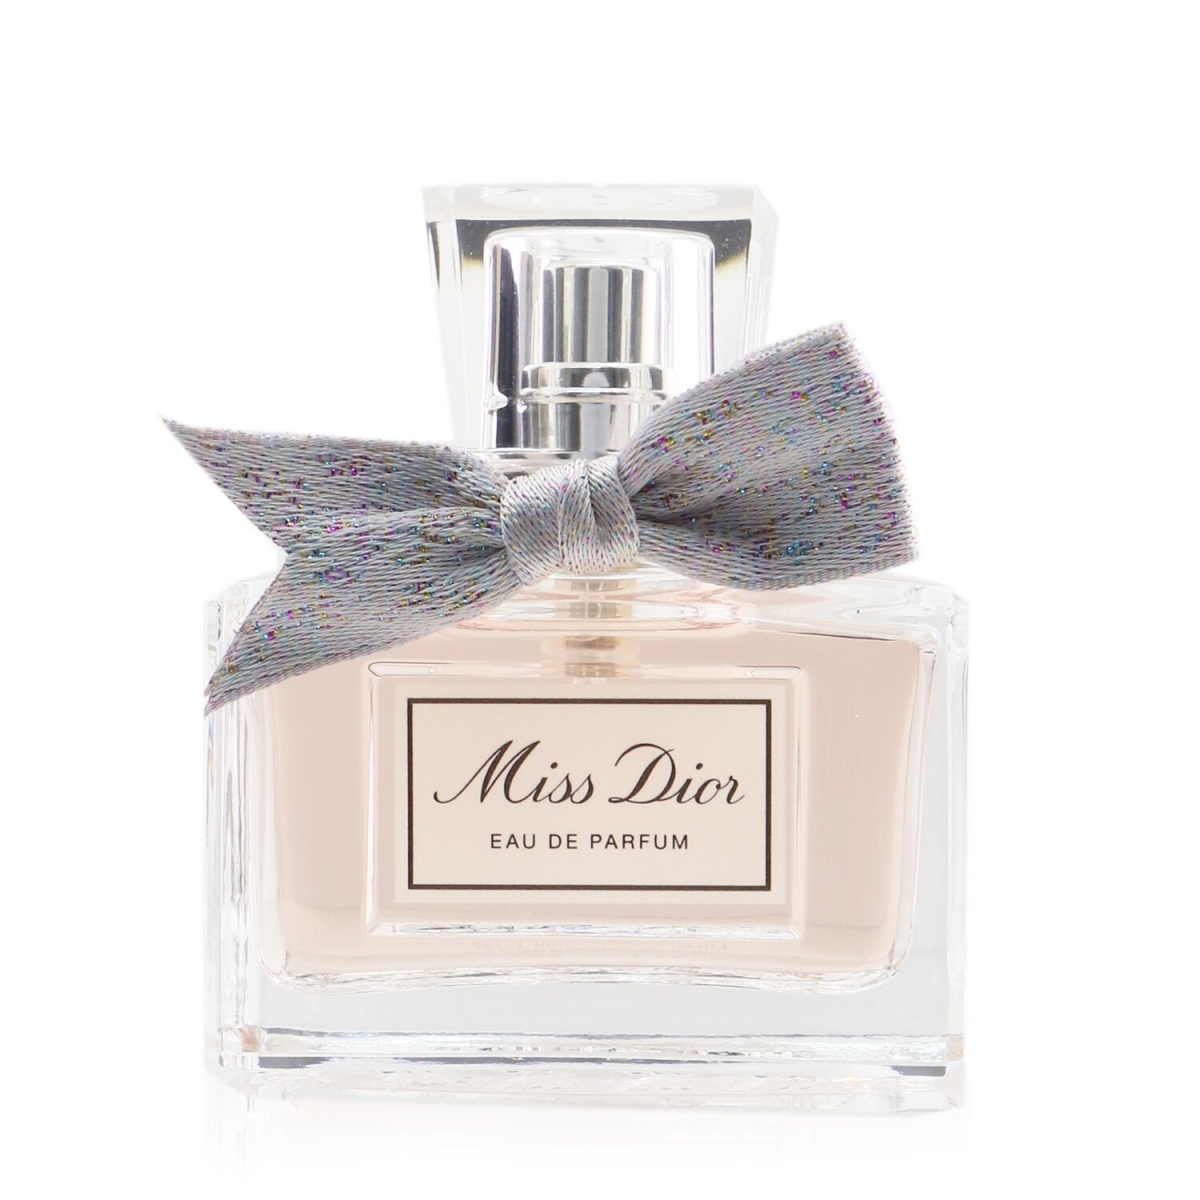 273548 1 oz Women Miss Dior Eau De Parfum Spray -  Christian Dior